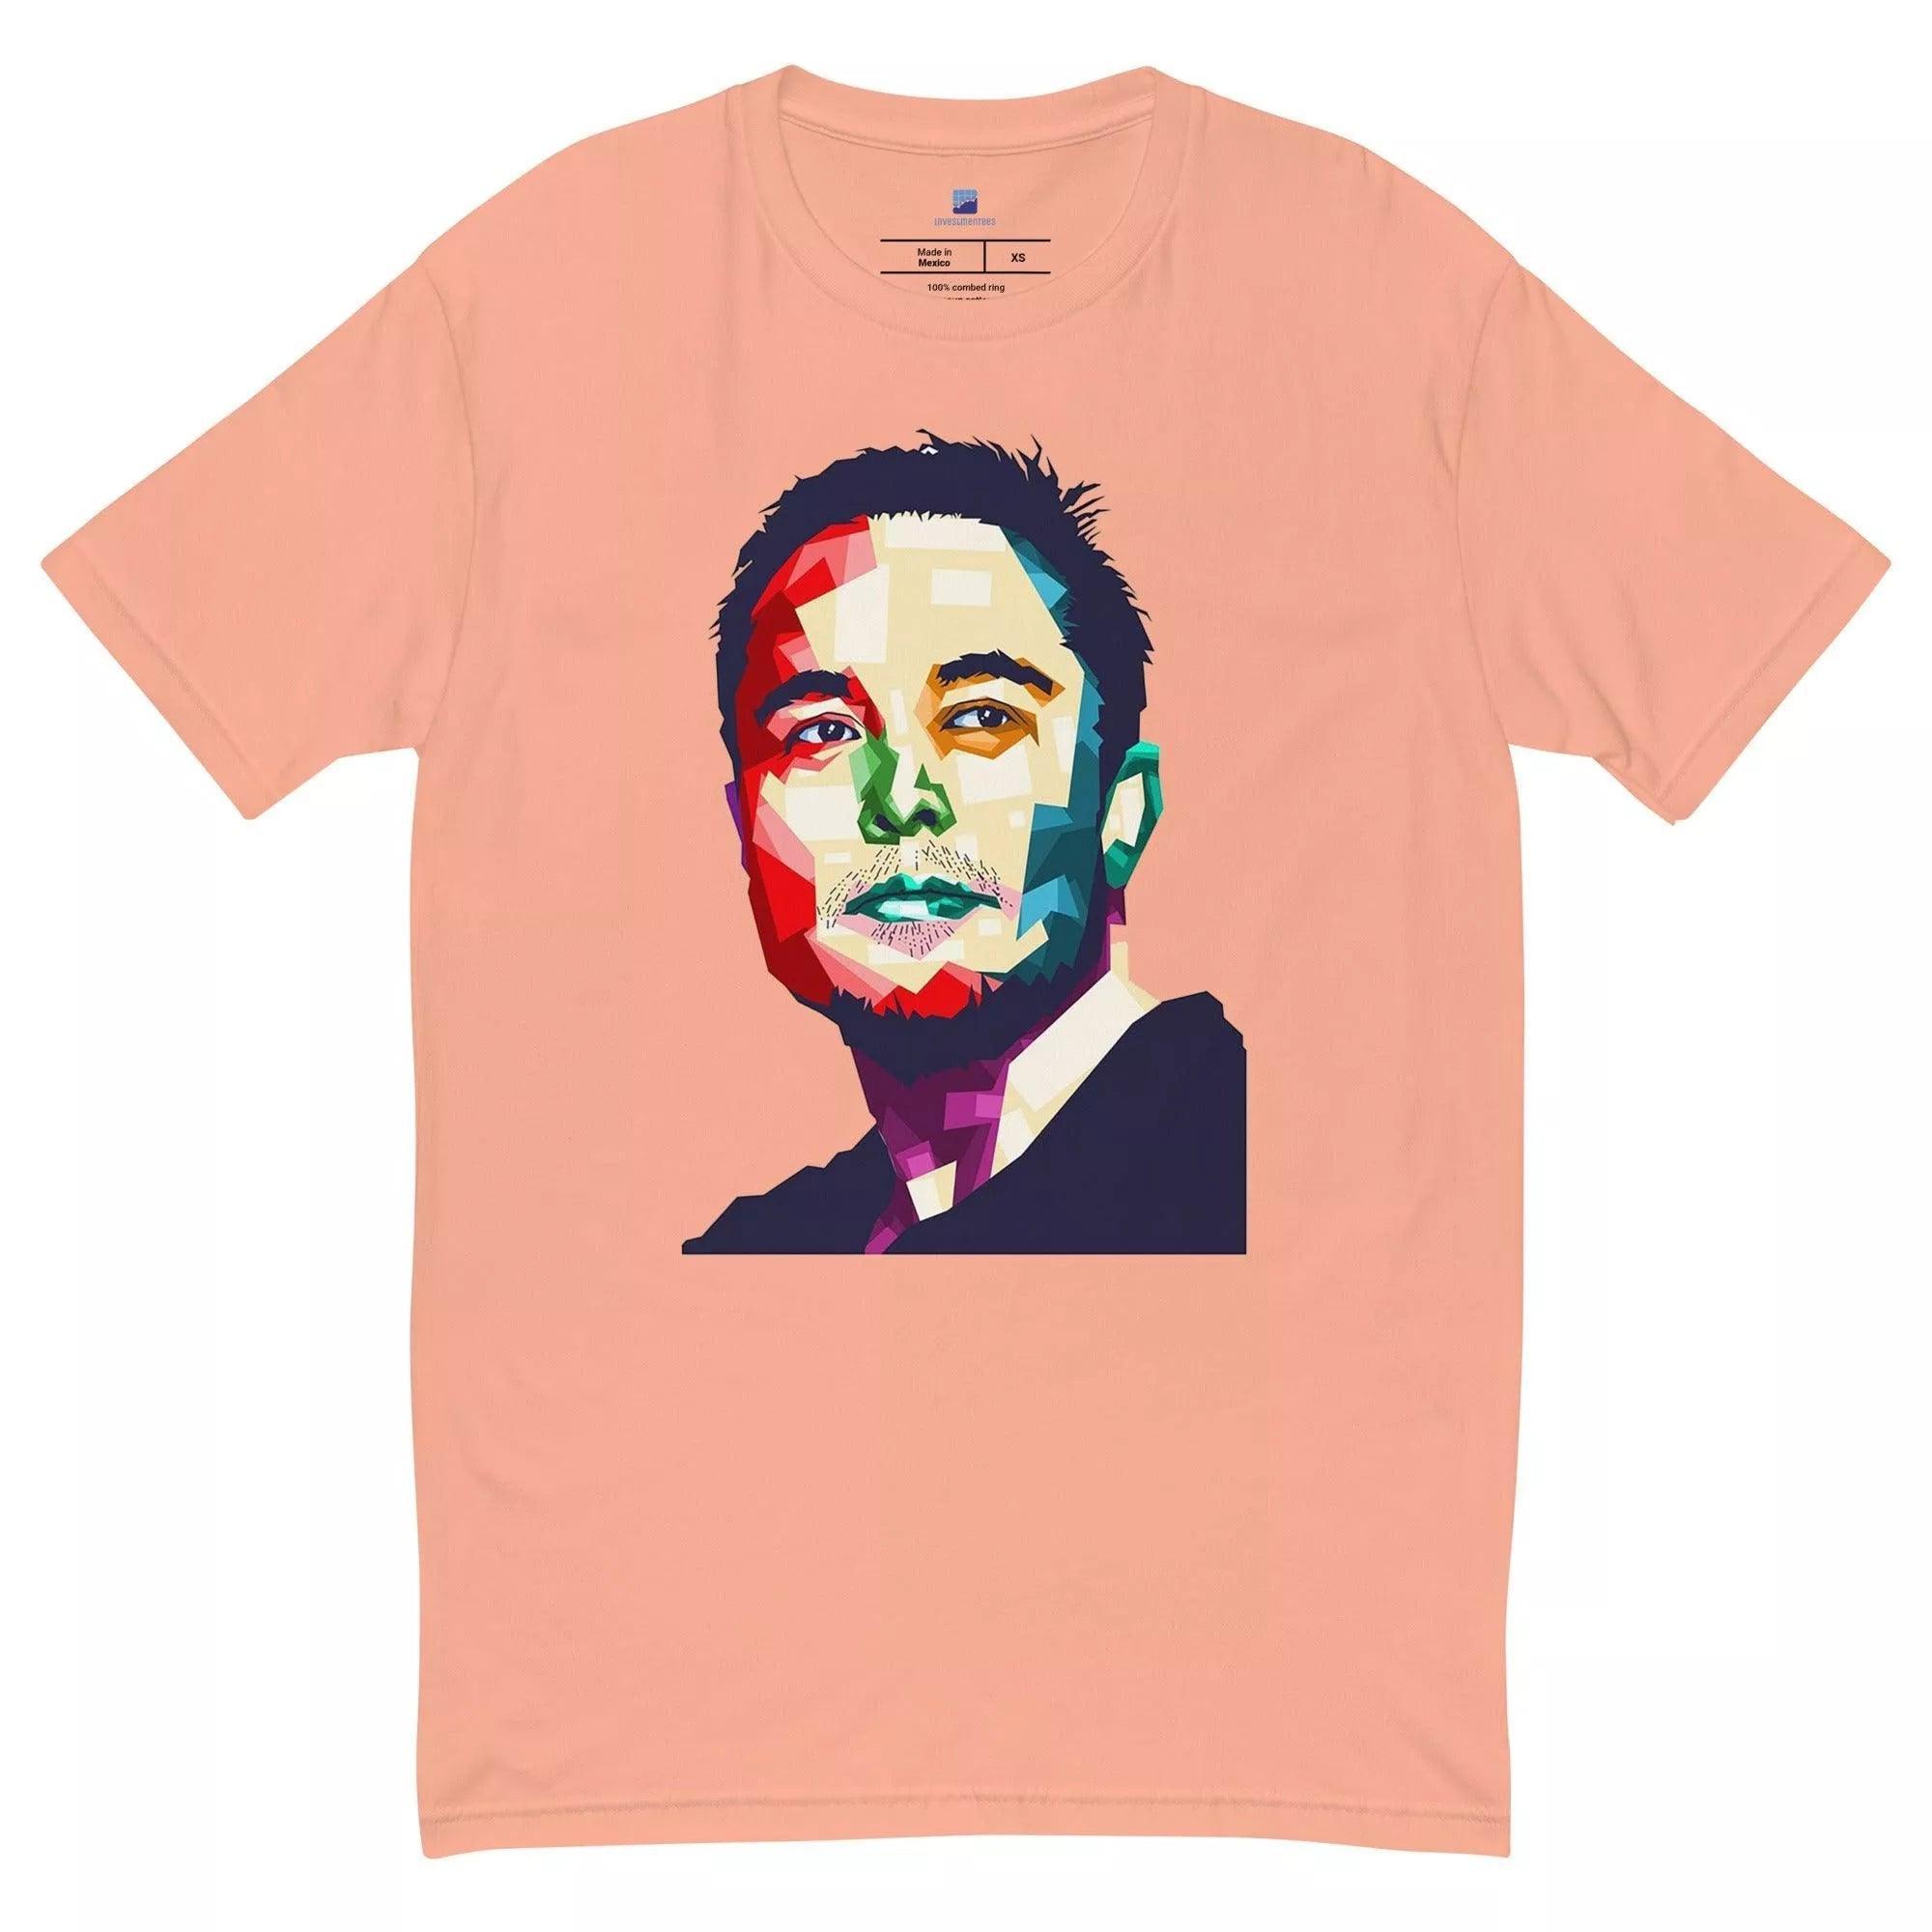 Elon Musk Art T-Shirt - InvestmenTees